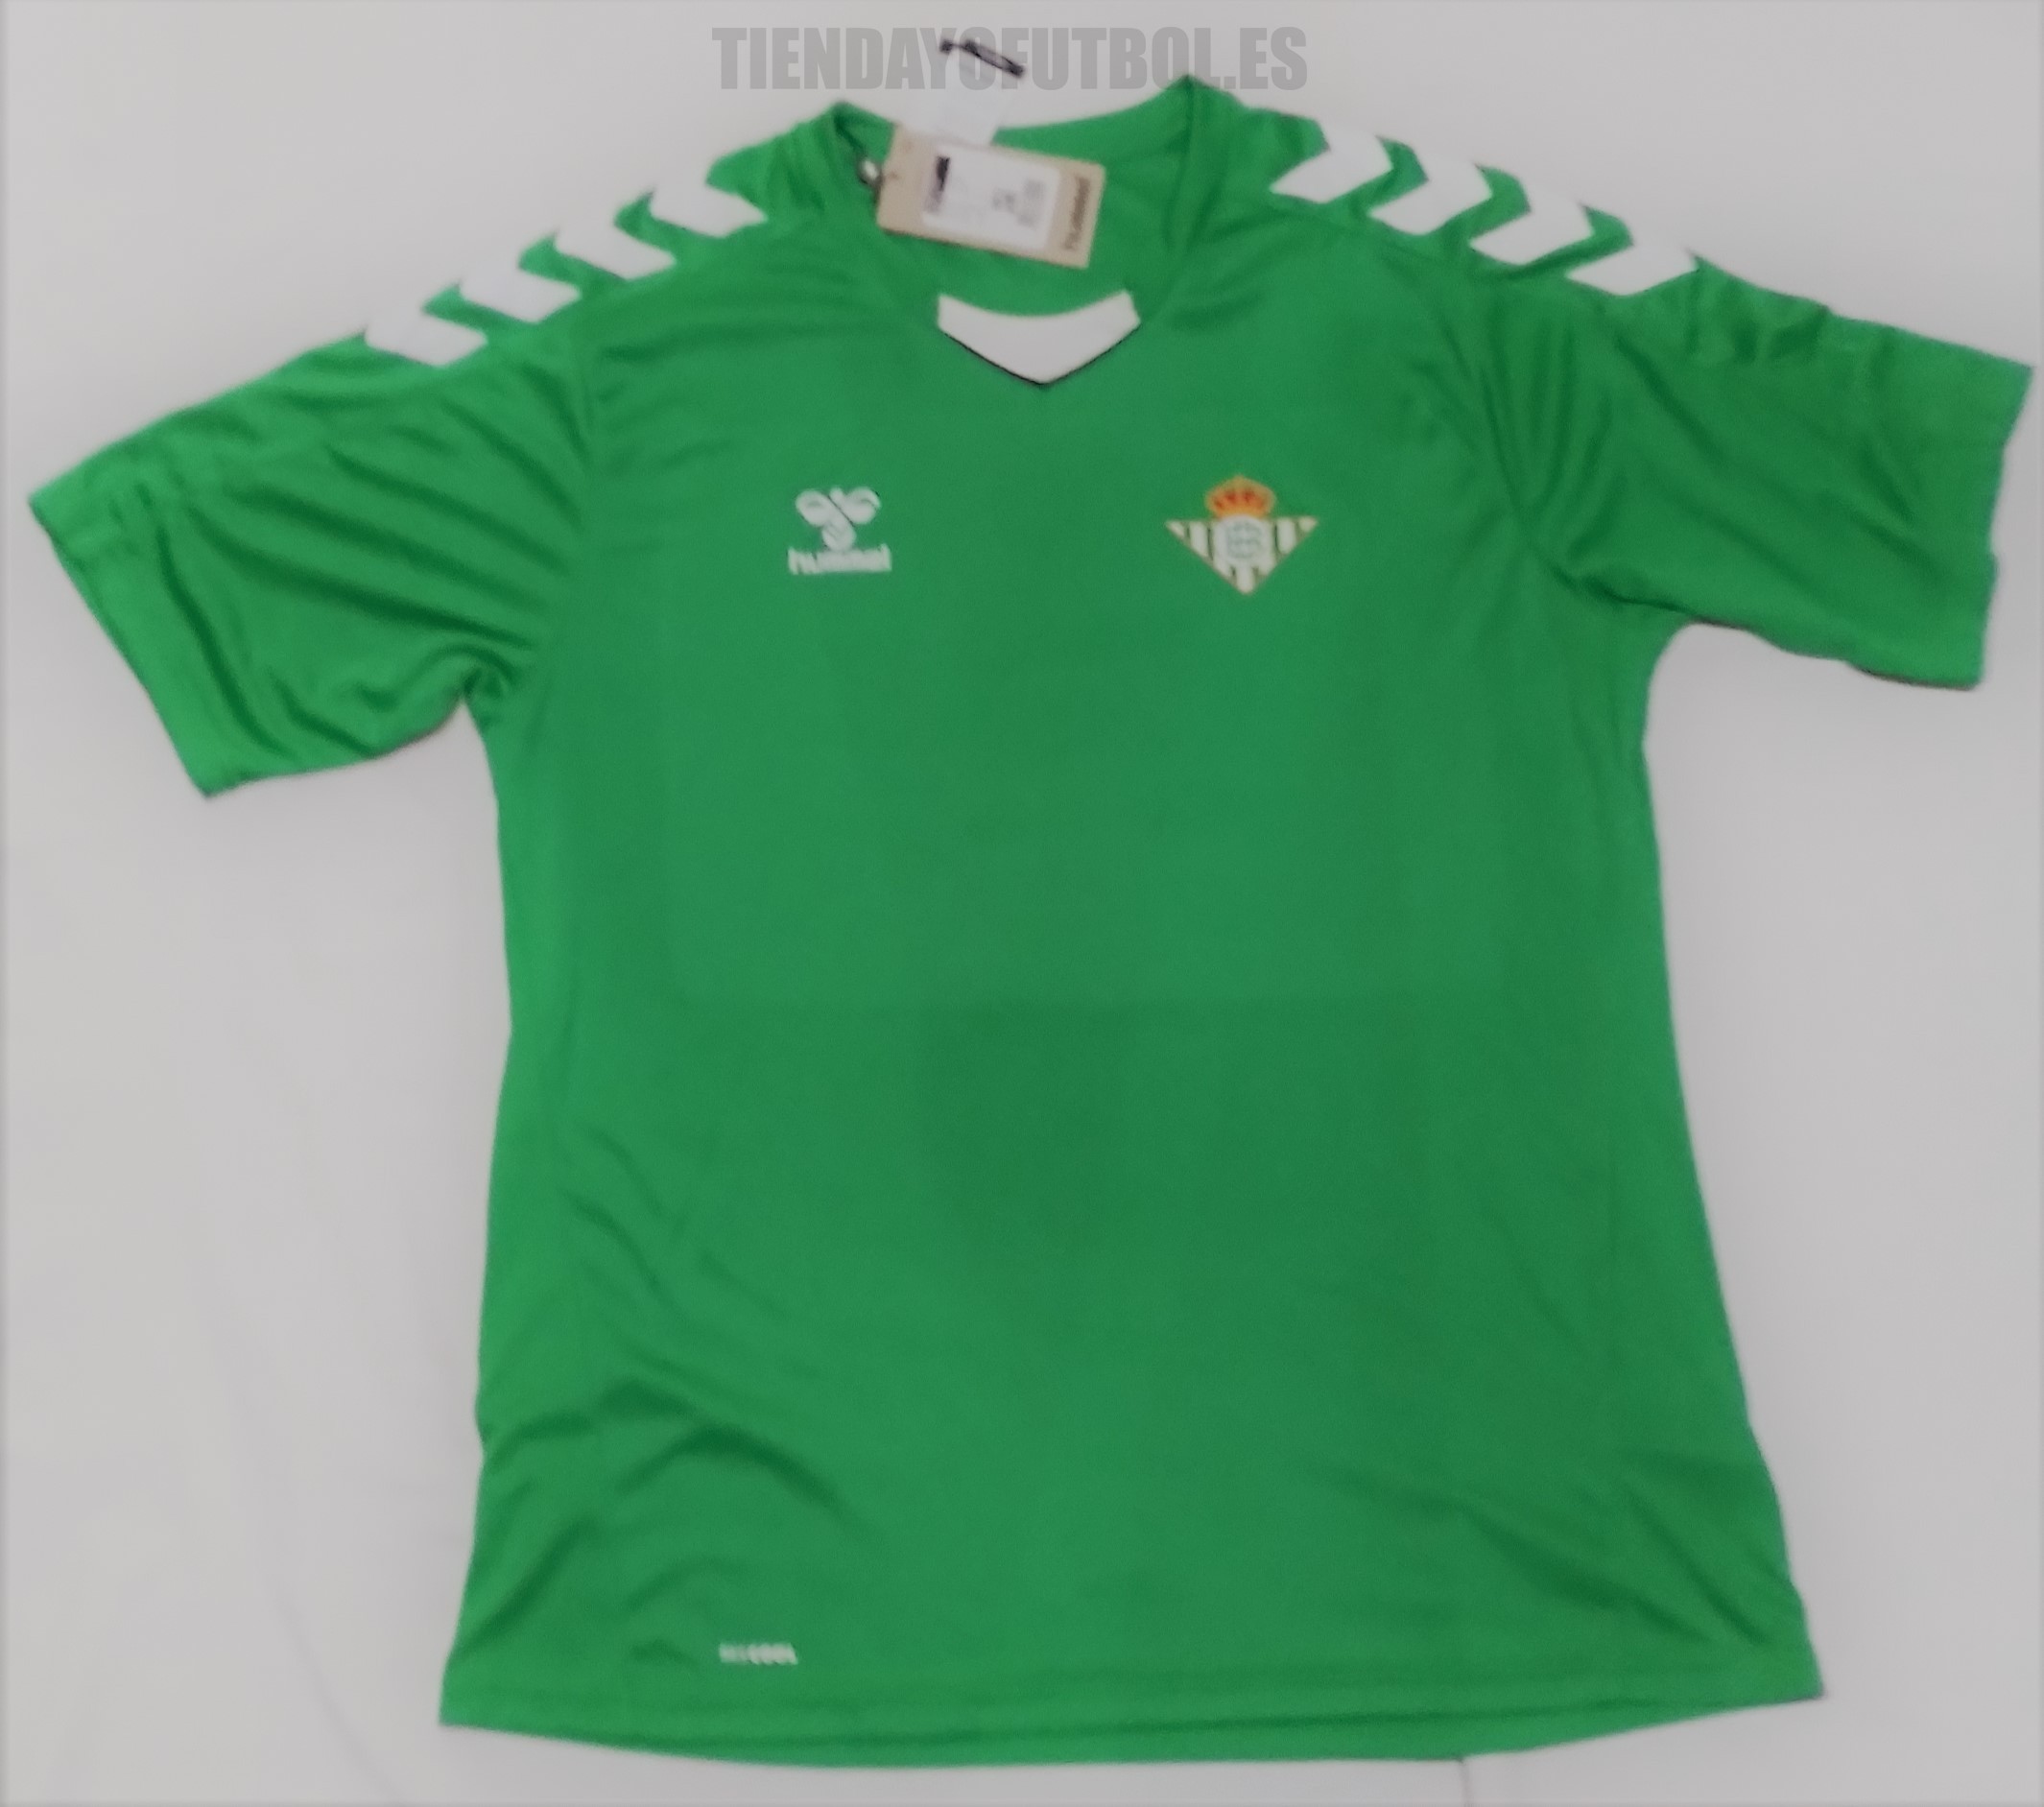 Camiseta del Betis verde 2022-23  Real Betis camiseta oficial 2022-23